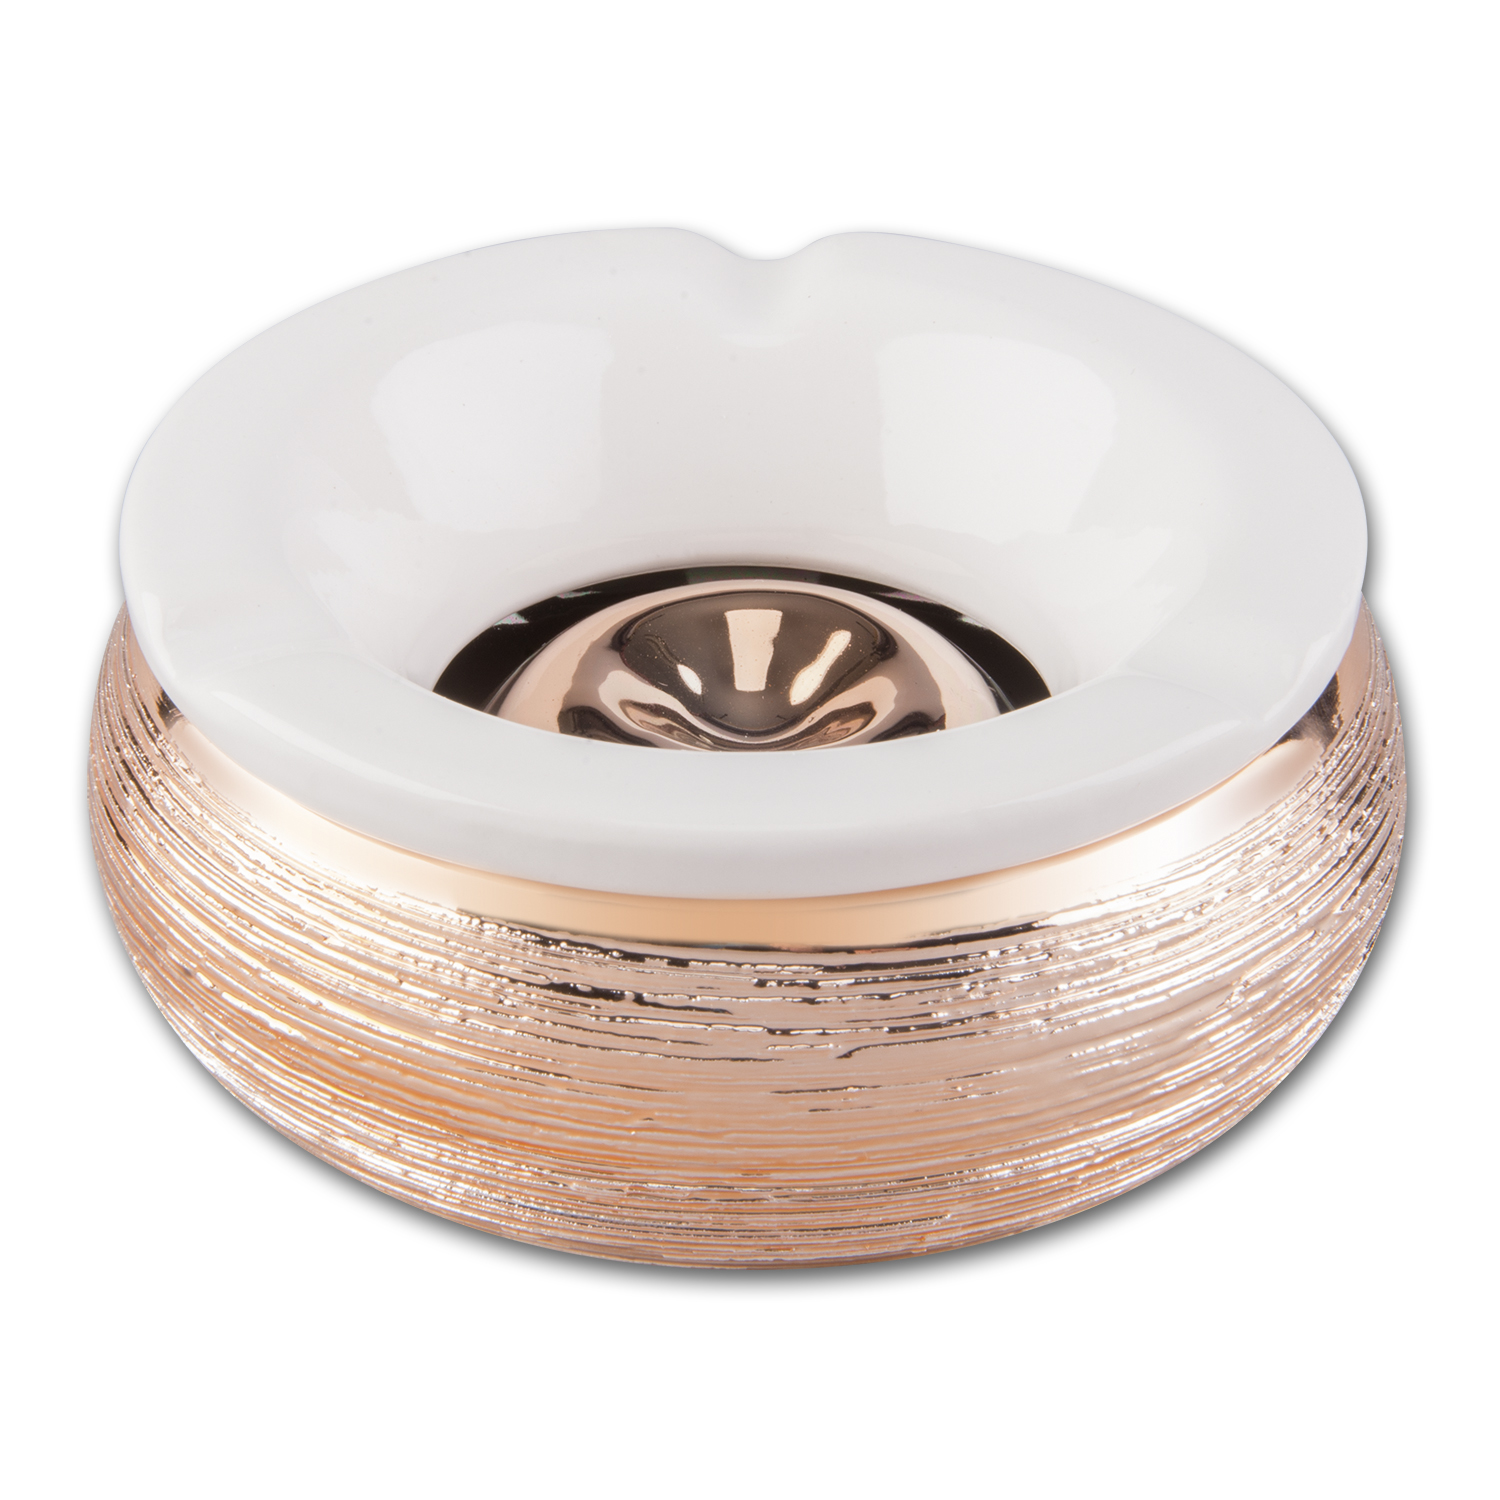 Windascher Keramik Metallstruktur rose Durchmesser 15cm